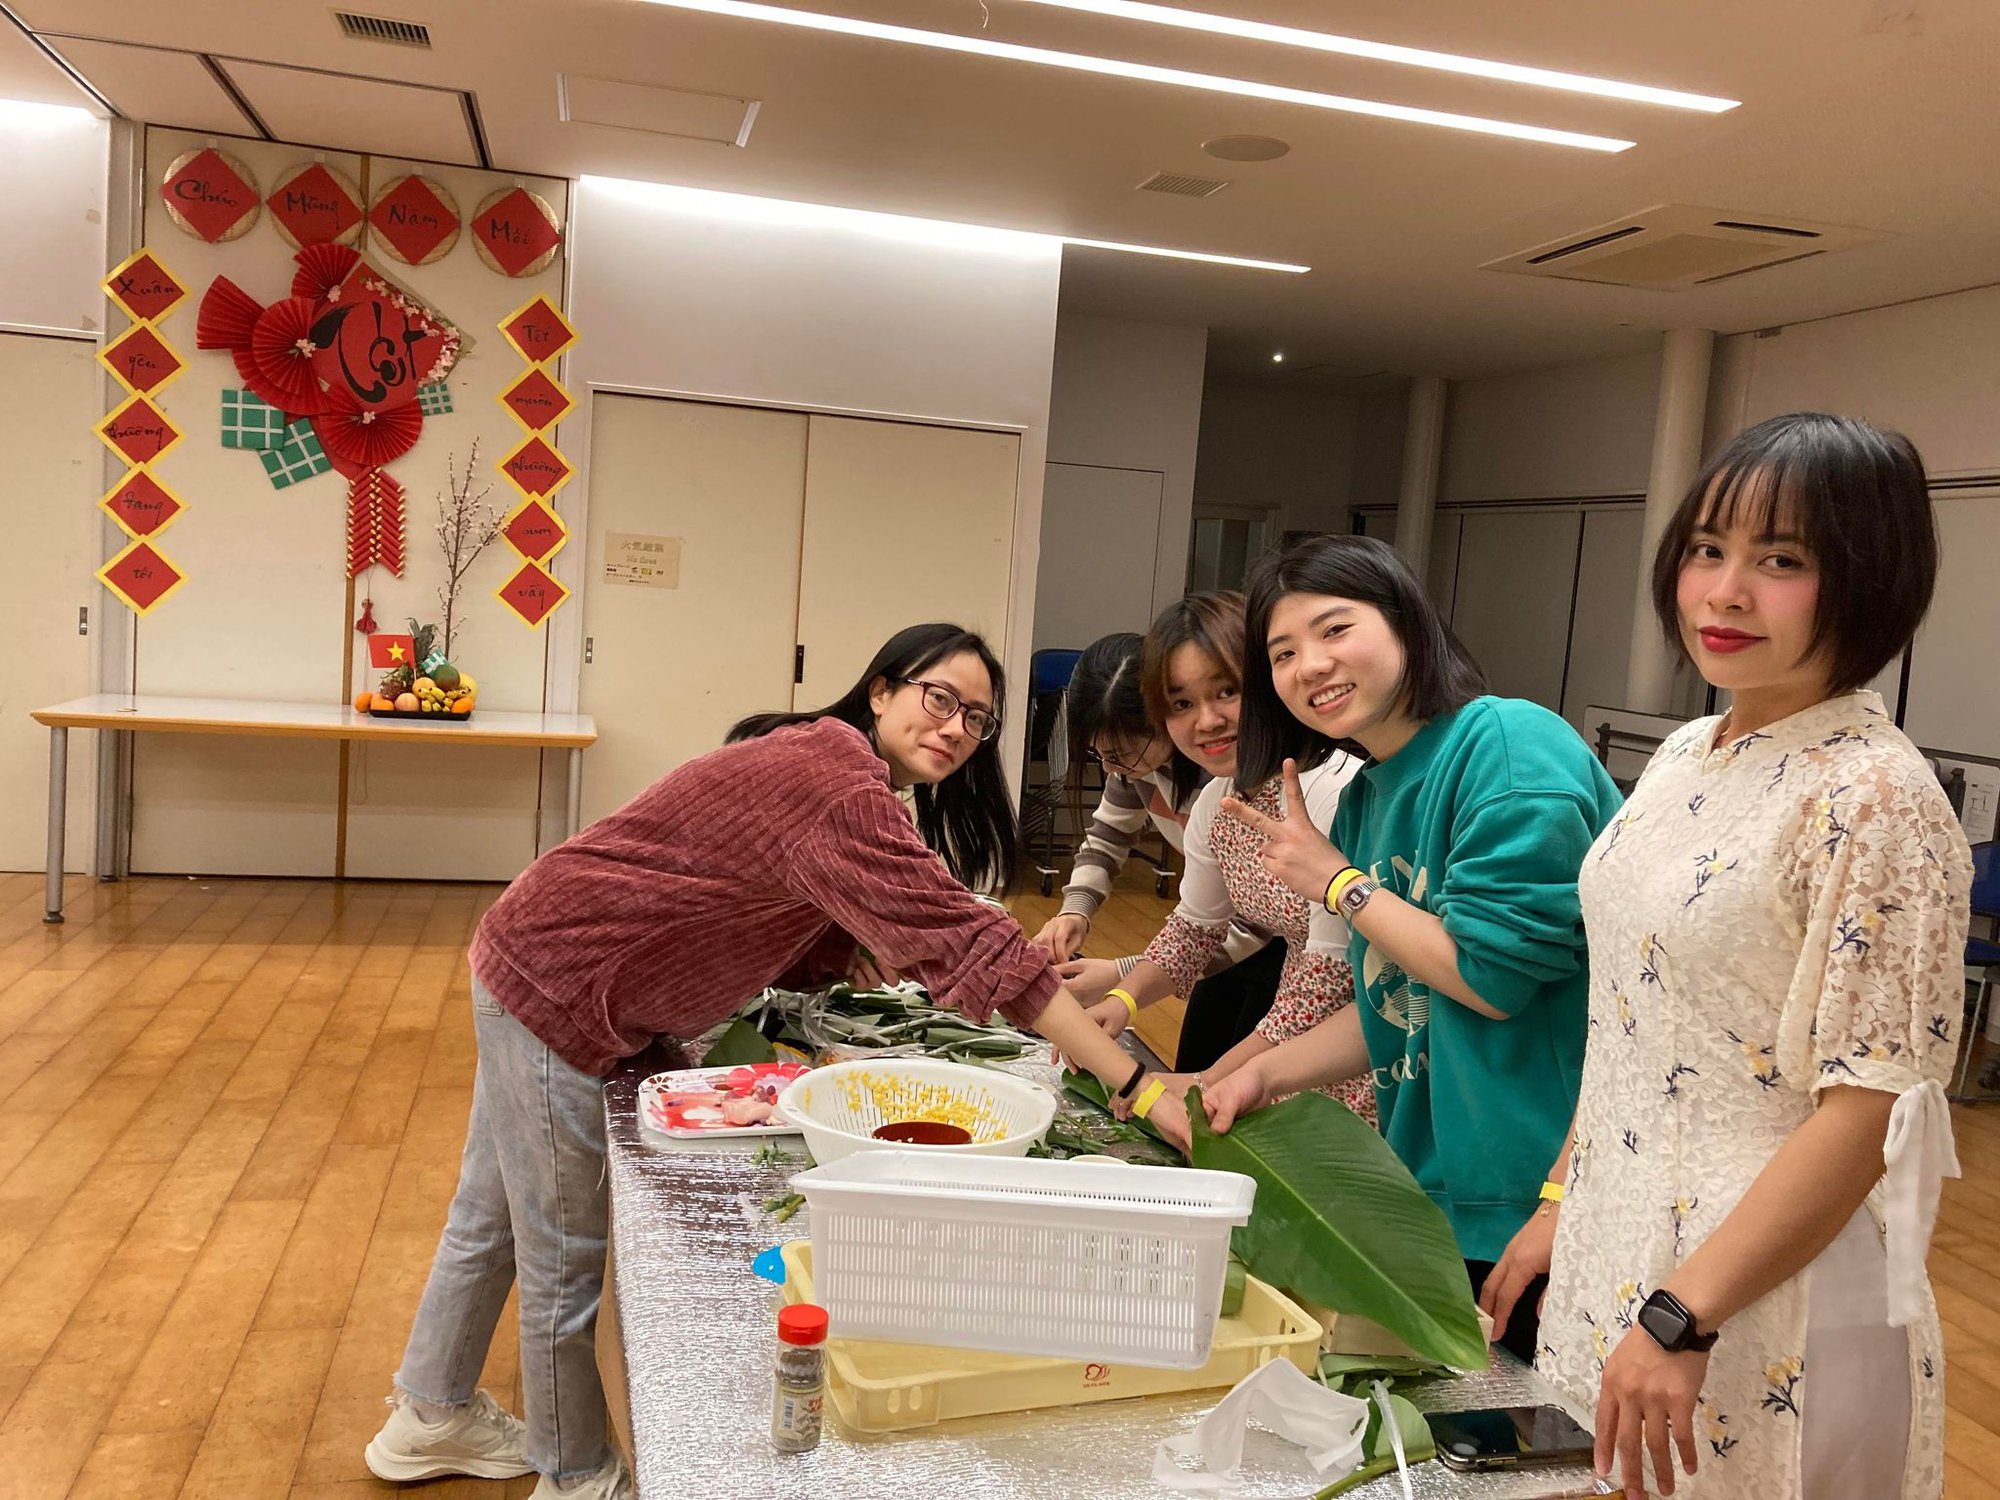 Ảnh cộng đồng người Việt tại Nhật Bản thi gói bánh chưng đón Tết Quý Mão 2023 - Ảnh 2.